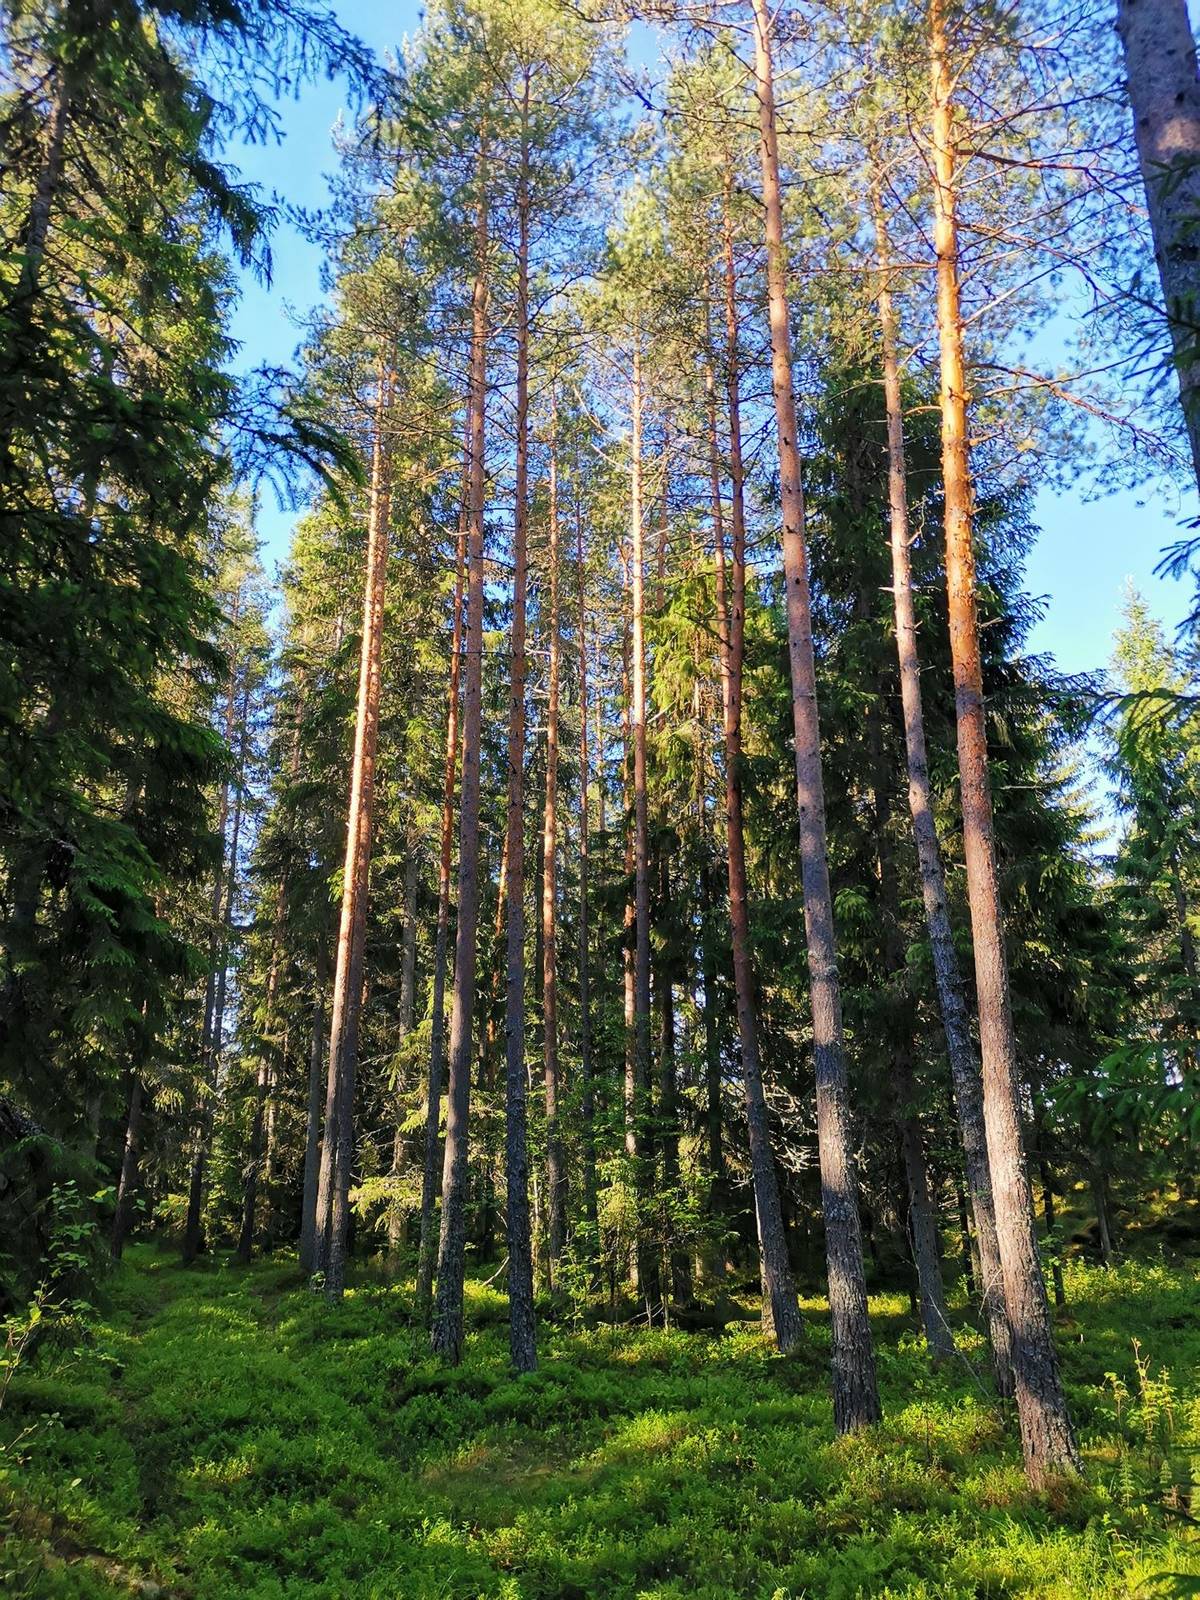 Kansikuva kohteelle Metsätila (Määräala) noin 5,7 ha, Vuoristo; 684-439-1-24, Rauma, Lappi.